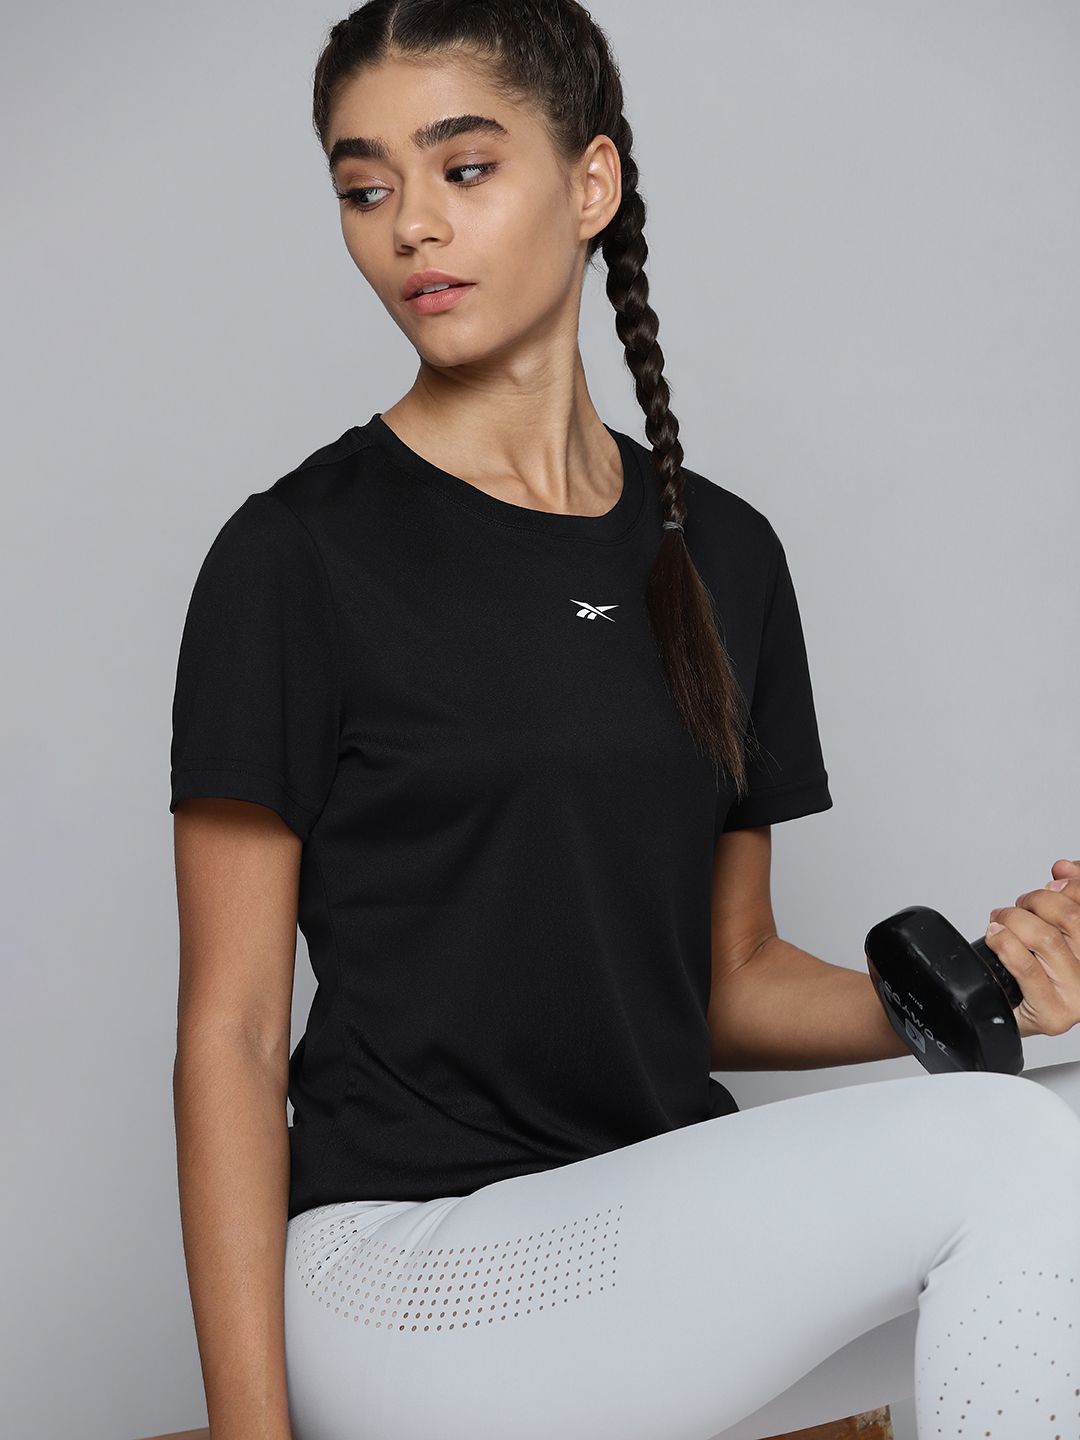 Reebok Women Black Brand Logo Training or Gym T-shirt Price in India